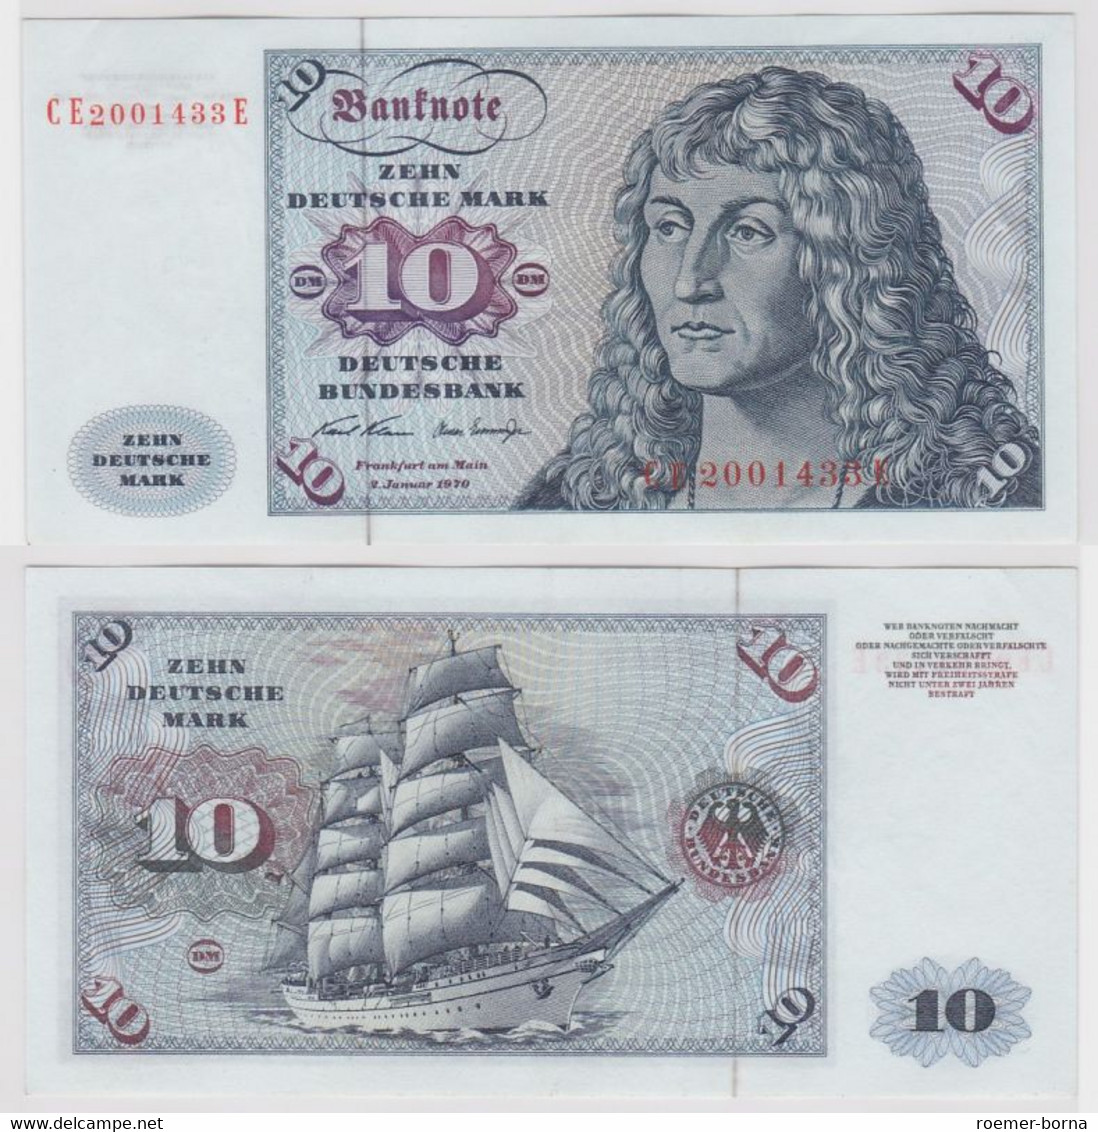 T147487 Banknote 10 DM Deutsche Mark Ro. 270b Schein 2.Jan. 1970 KN CE 2001433 E - 10 Deutsche Mark